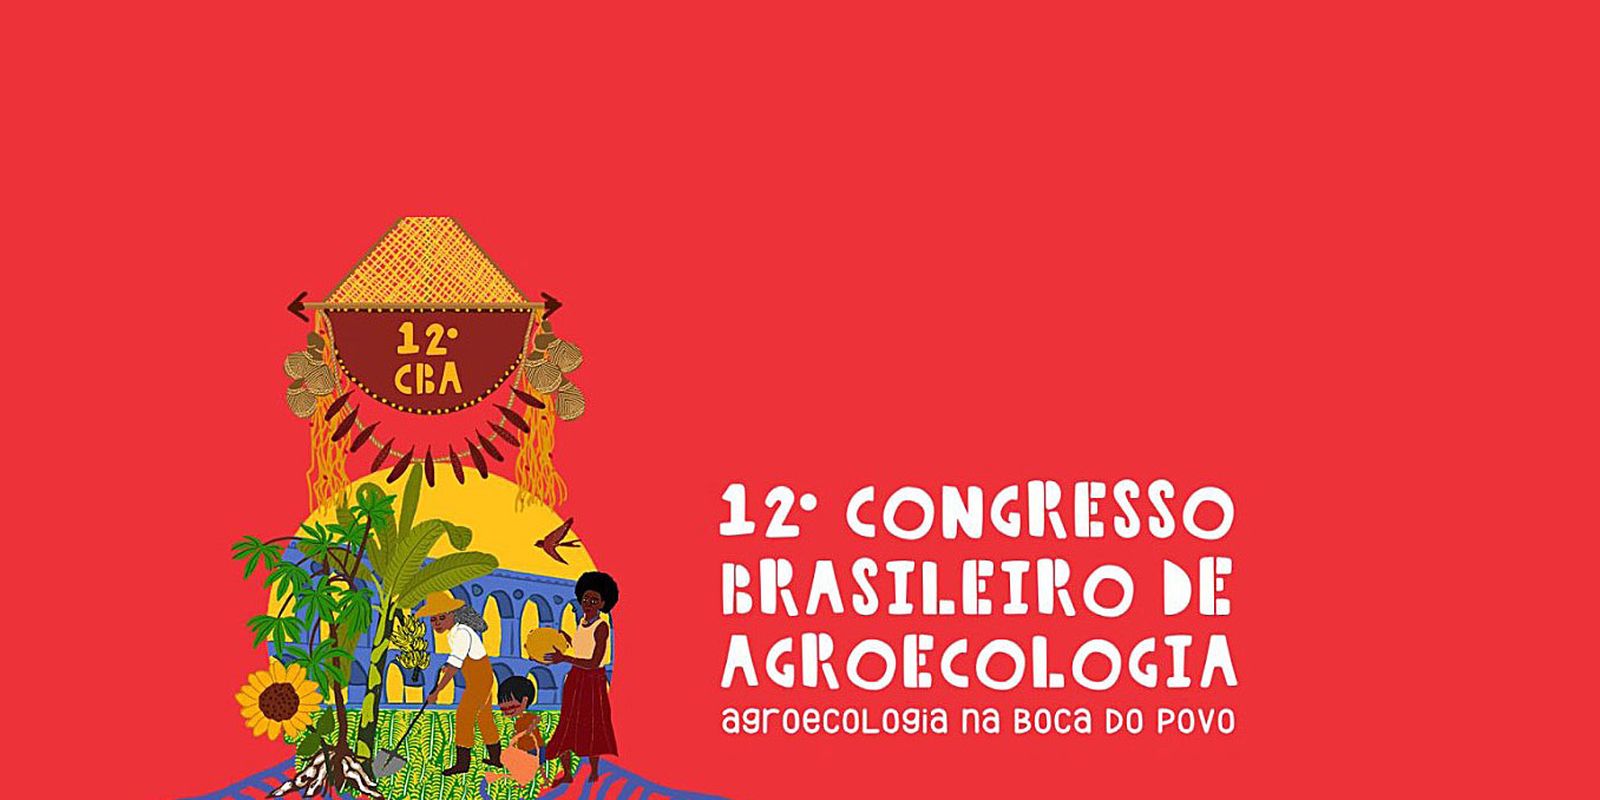 Começa hoje no Rio 12º Congresso Brasileiro de Agroecologia